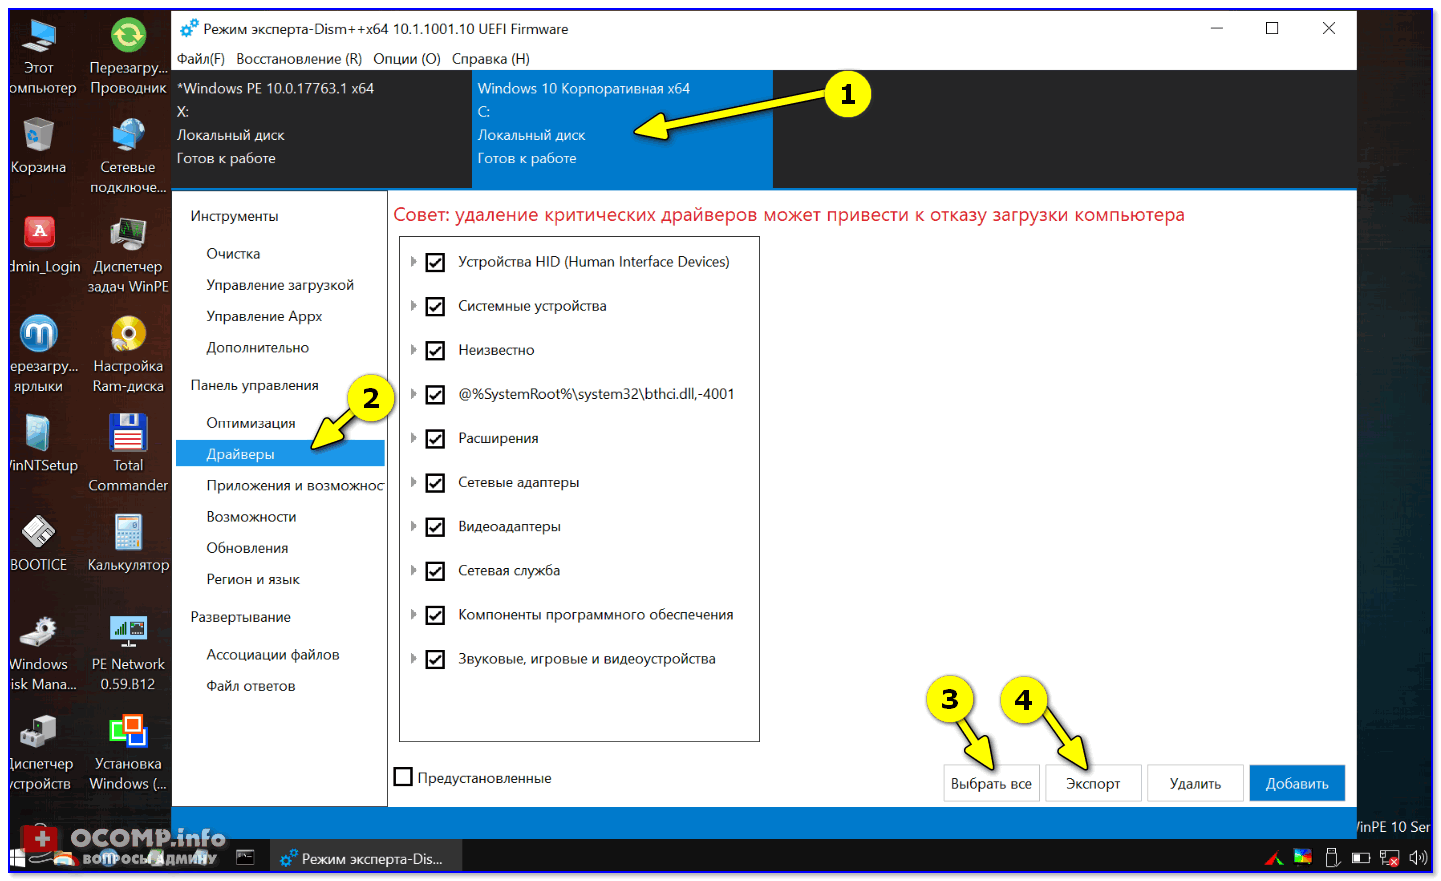 «Инструкции по переносу предпочтительных веб-закладок и обмену данными между отдельными профилями пользователей в системах Windows 11»